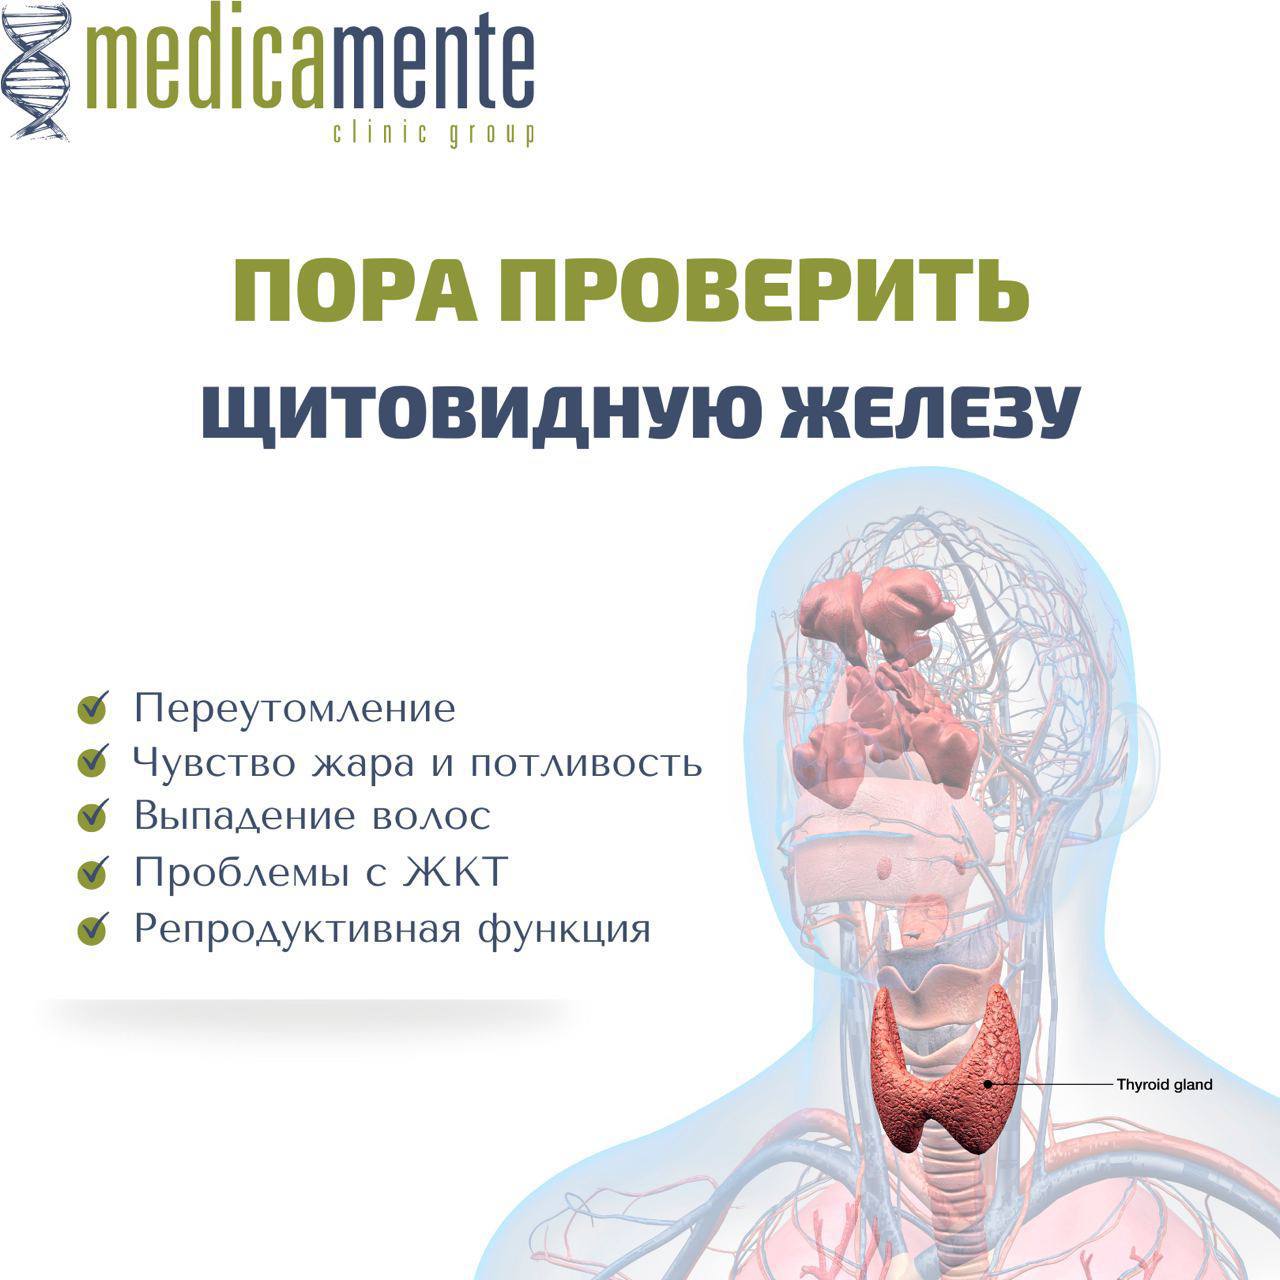 Проверка щитовидной железы